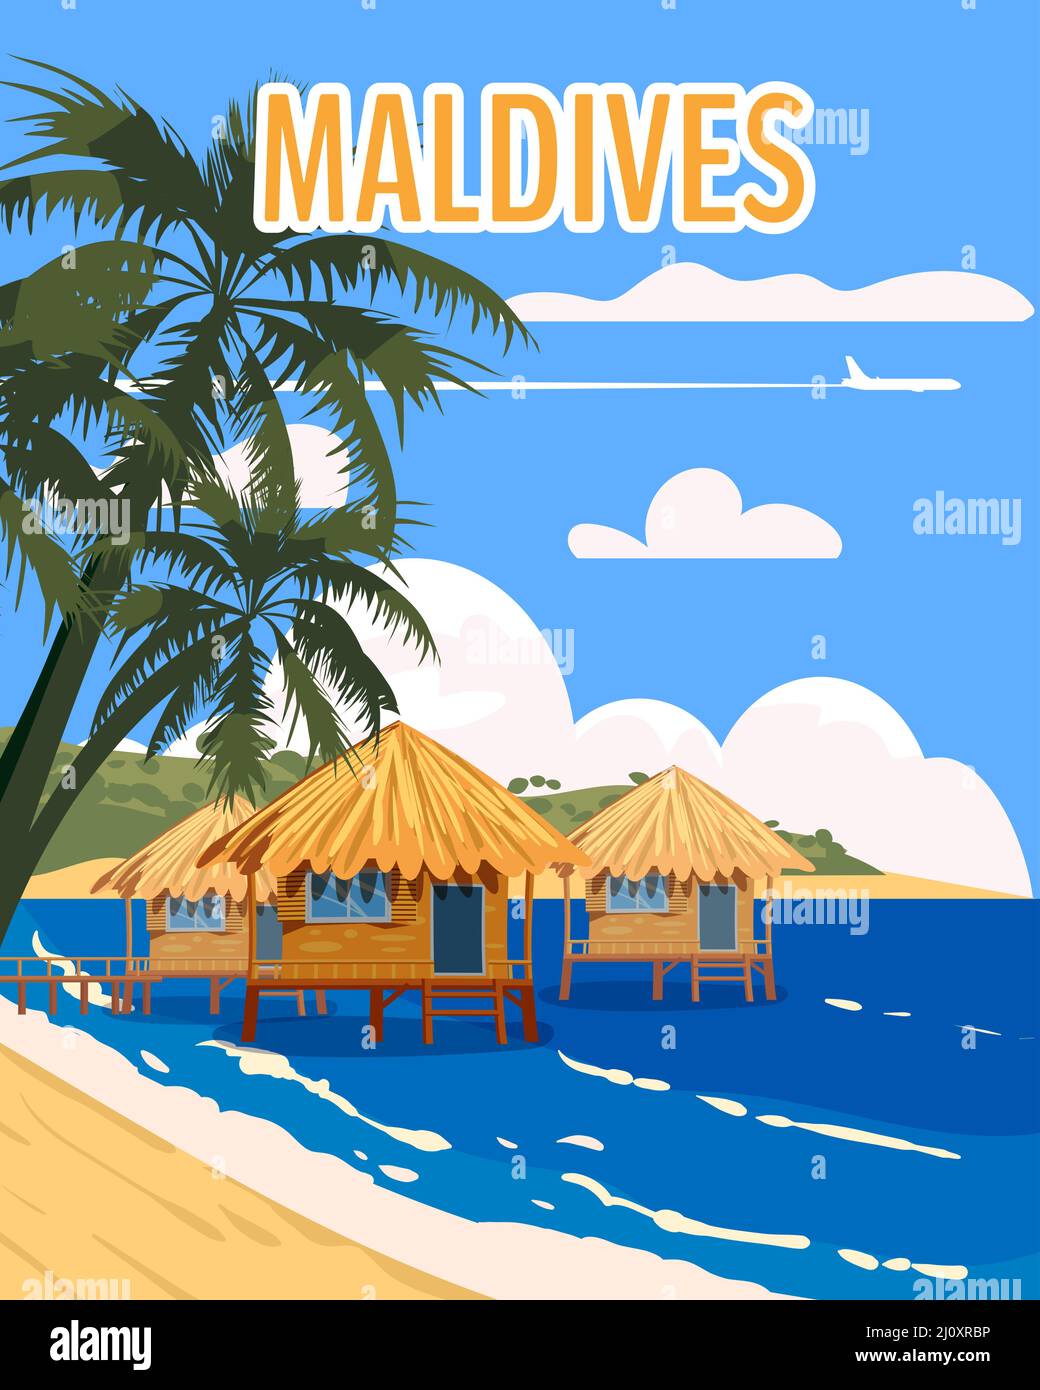 Maldive tropicale resort poster vintage. Spiaggia costa capanne tradizionali, palme, oceano. Vettore di illustrazione stile retrò Illustrazione Vettoriale